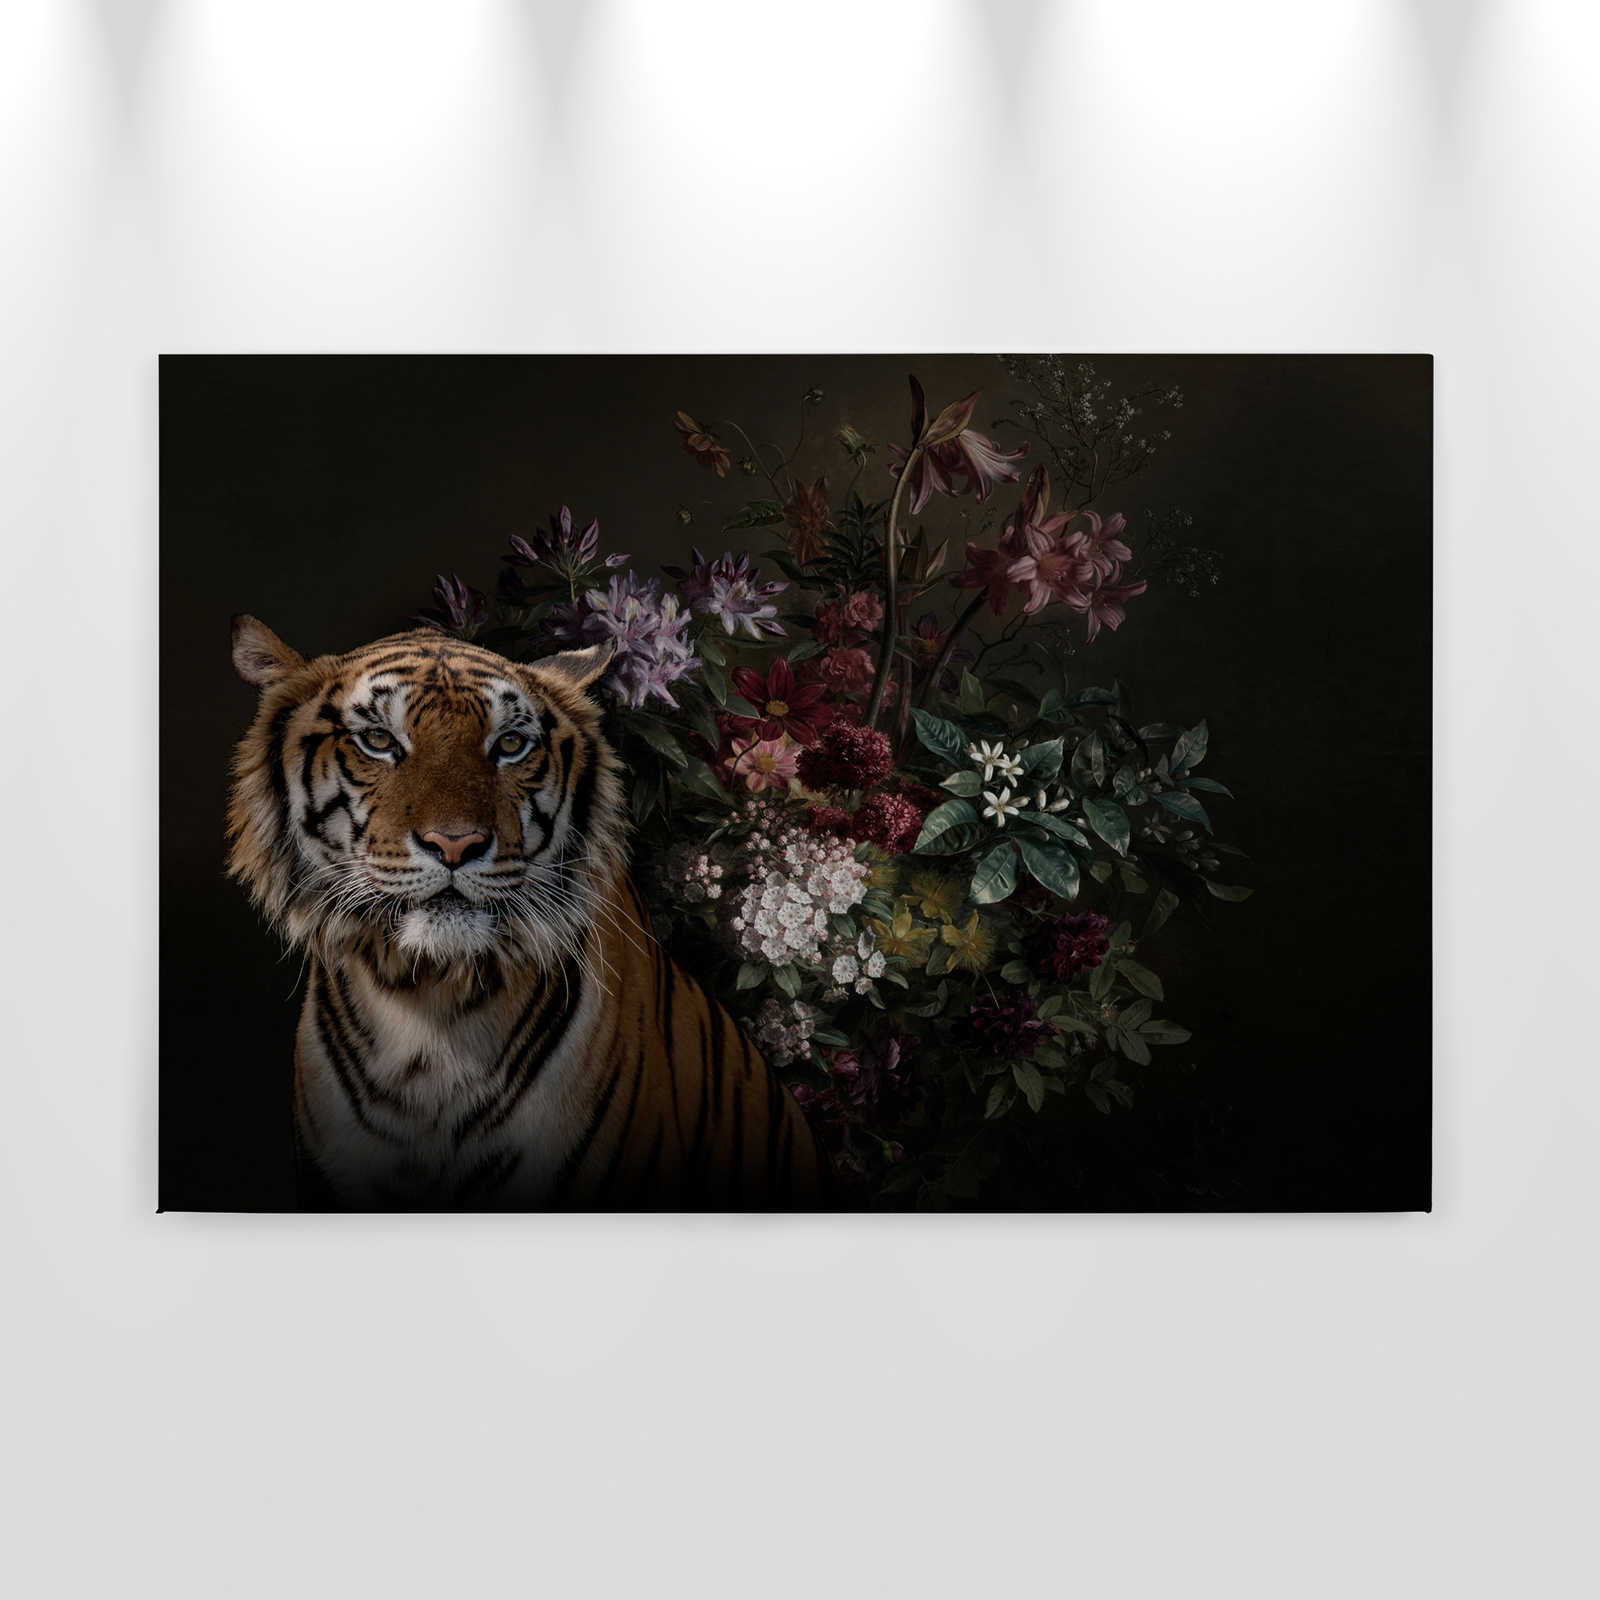             Quadro su tela Ritratto di tigre con fiori - 0,90 m x 0,60 m
        